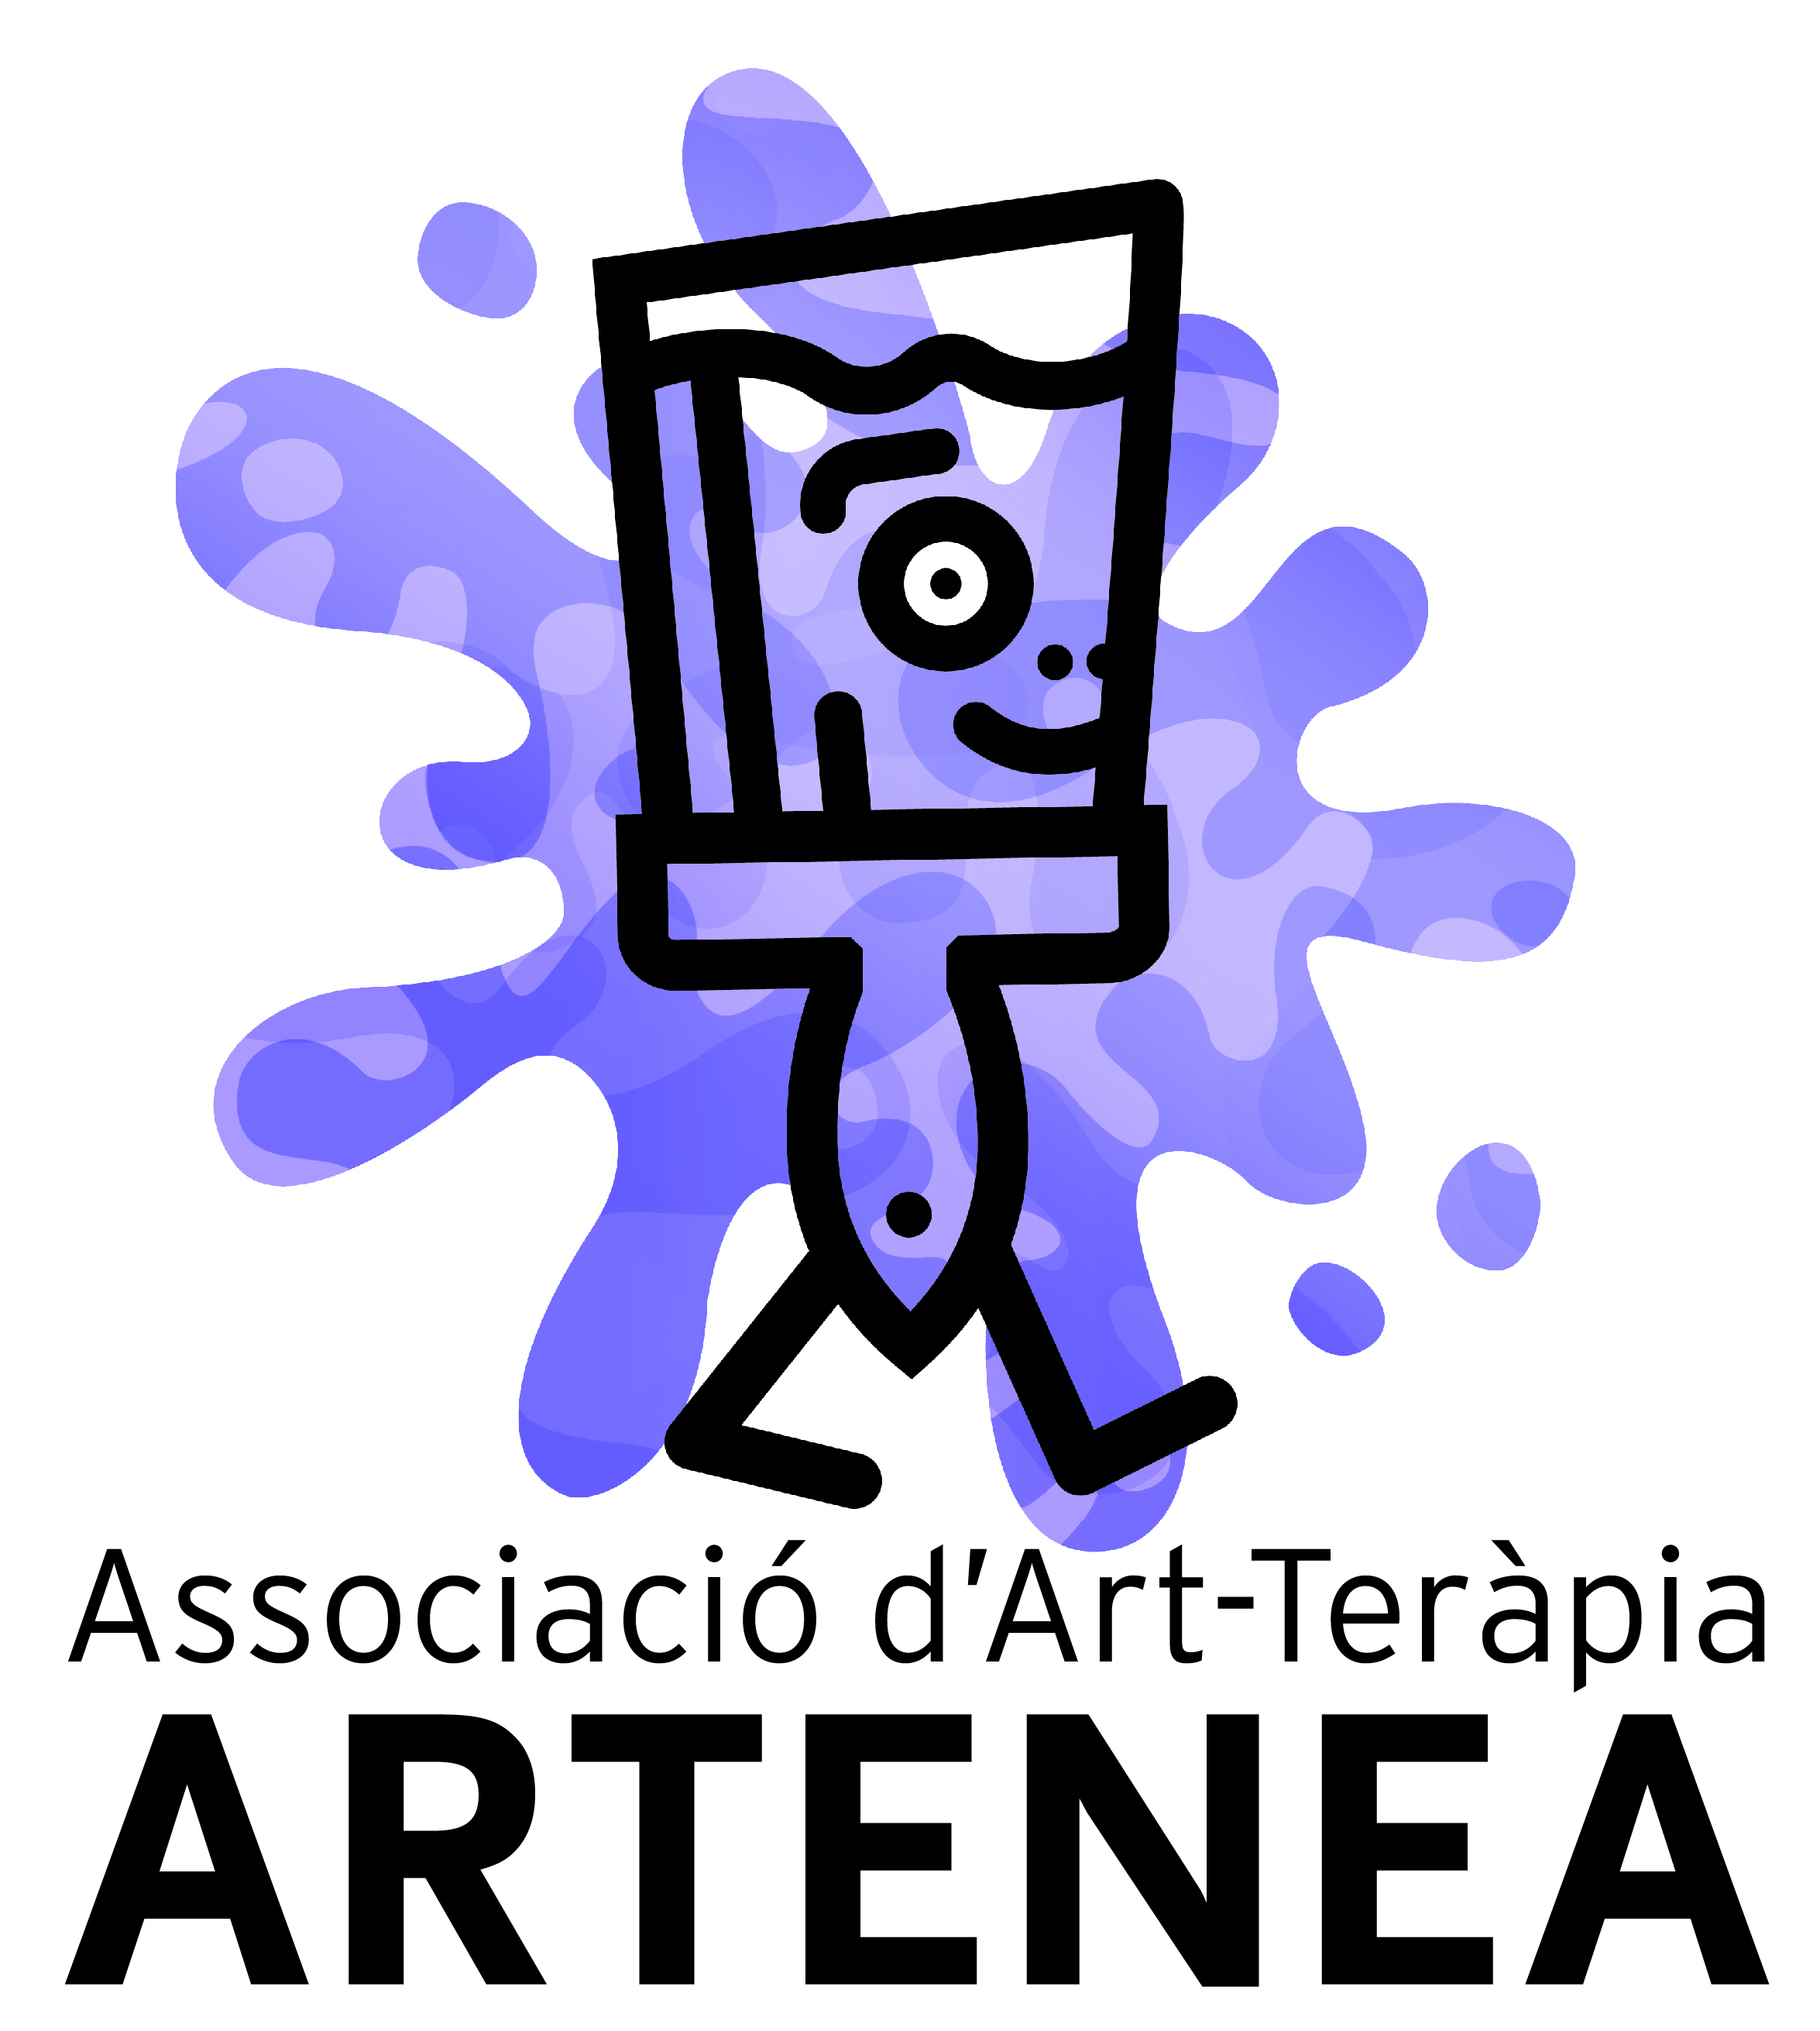 Associació Arteterapia ARTENEA